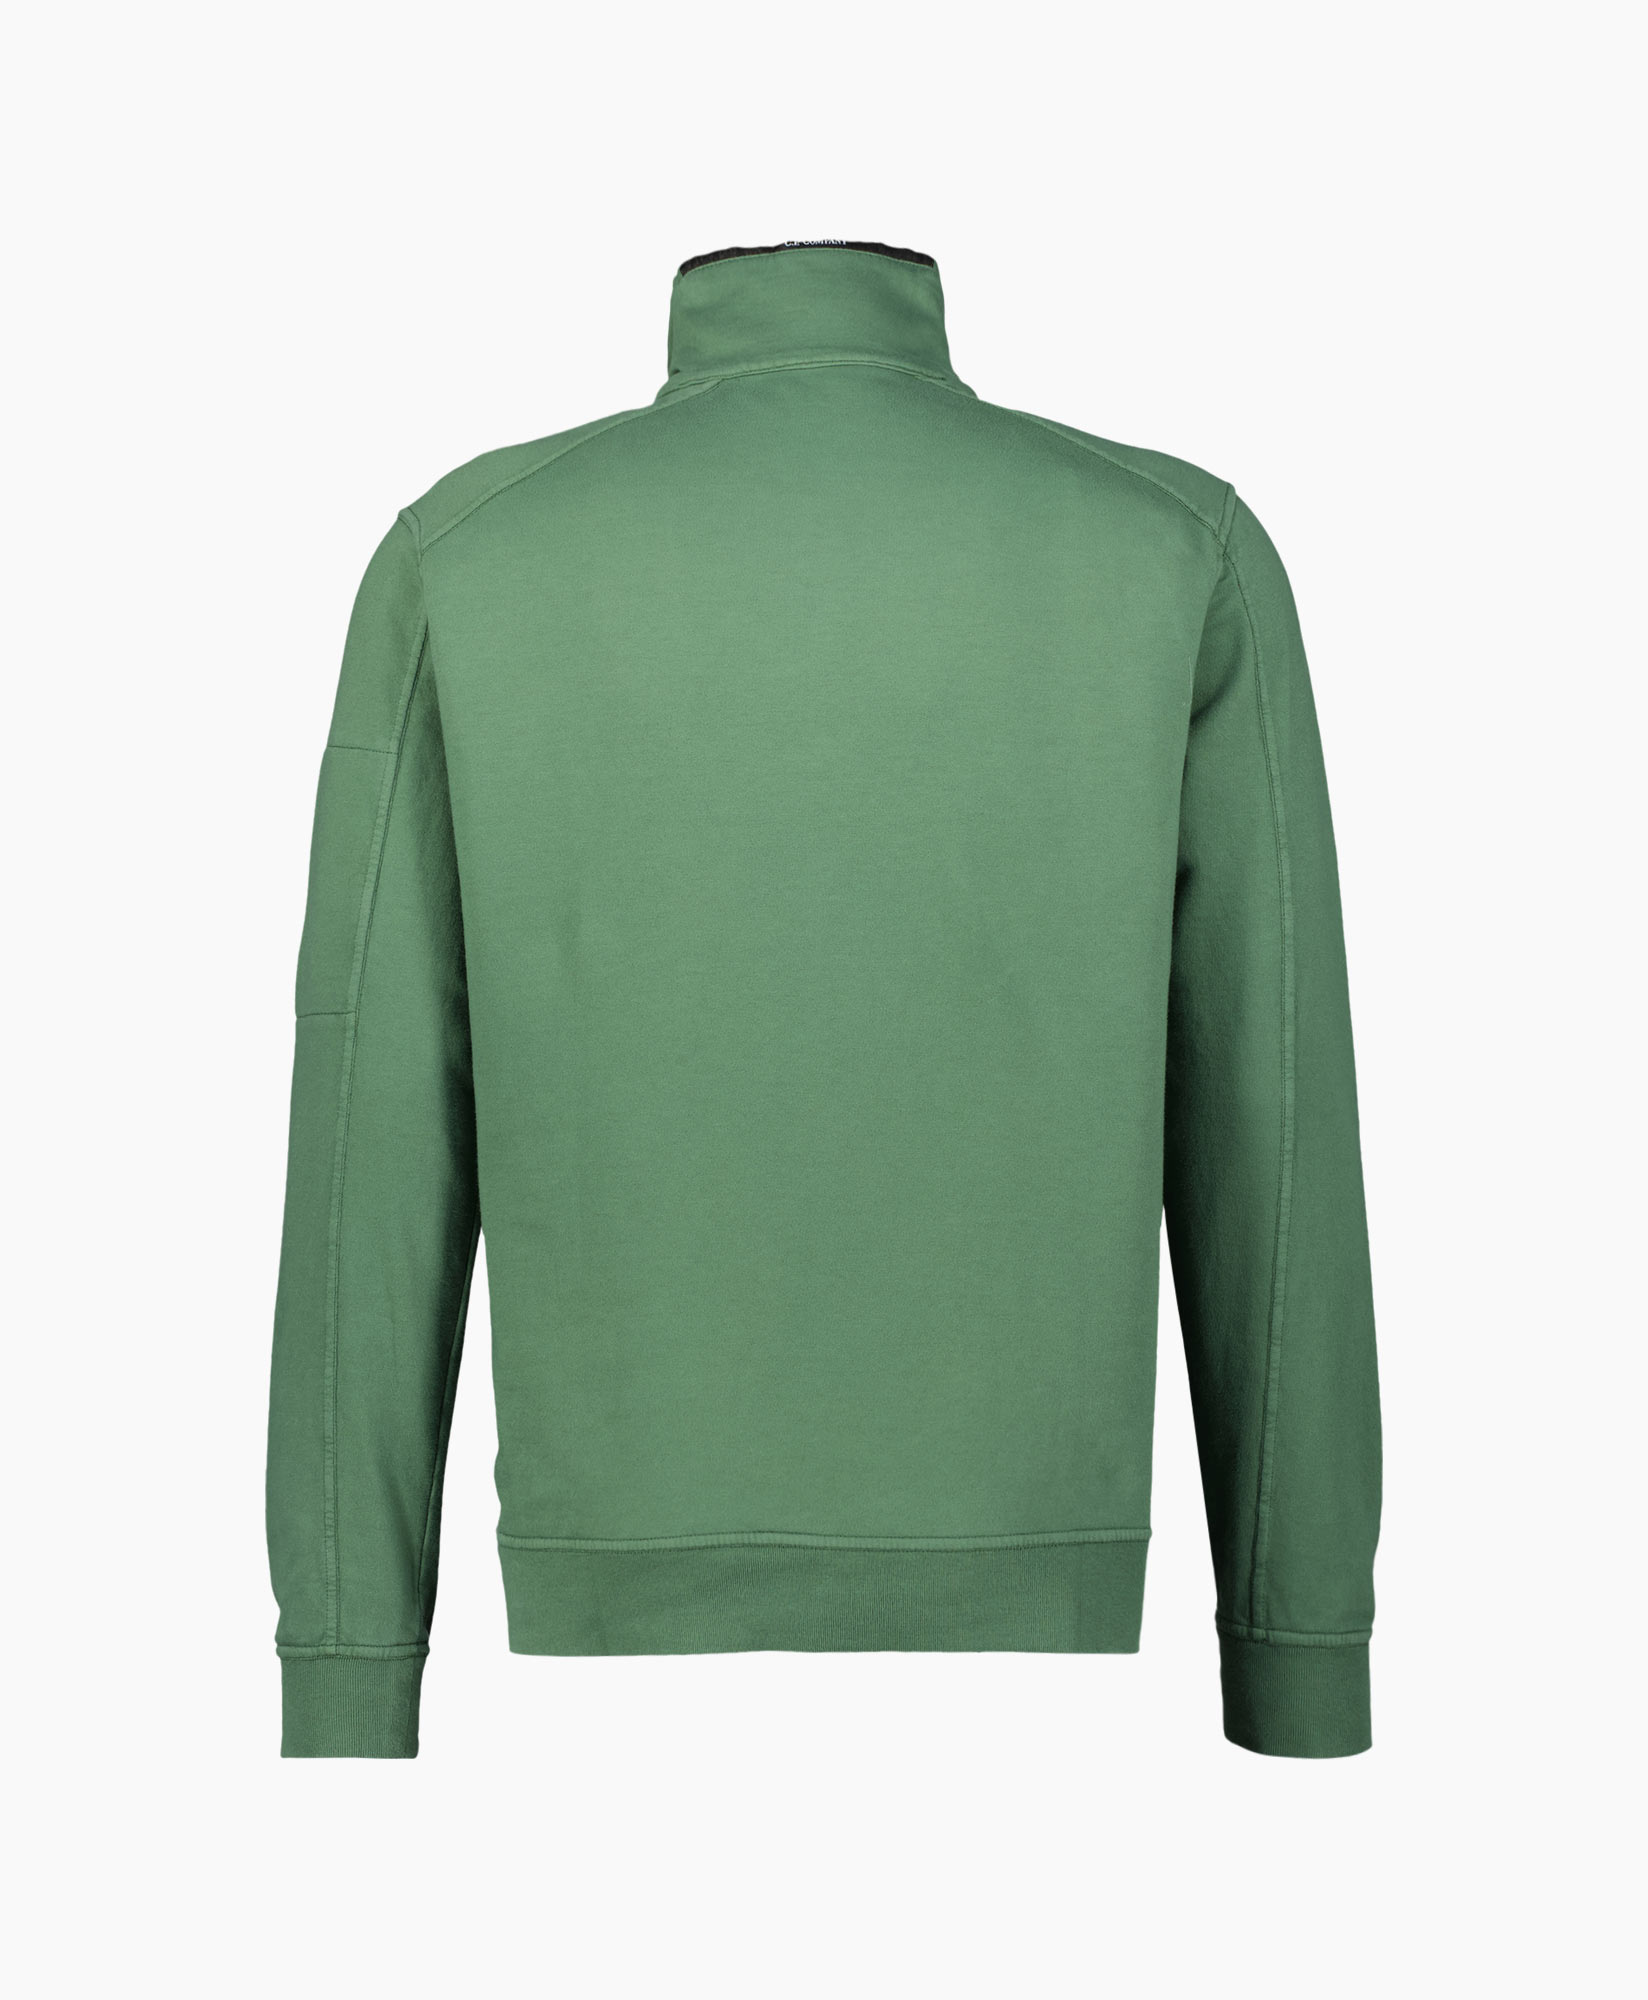 Sweater Light Fleece Zipped Groen